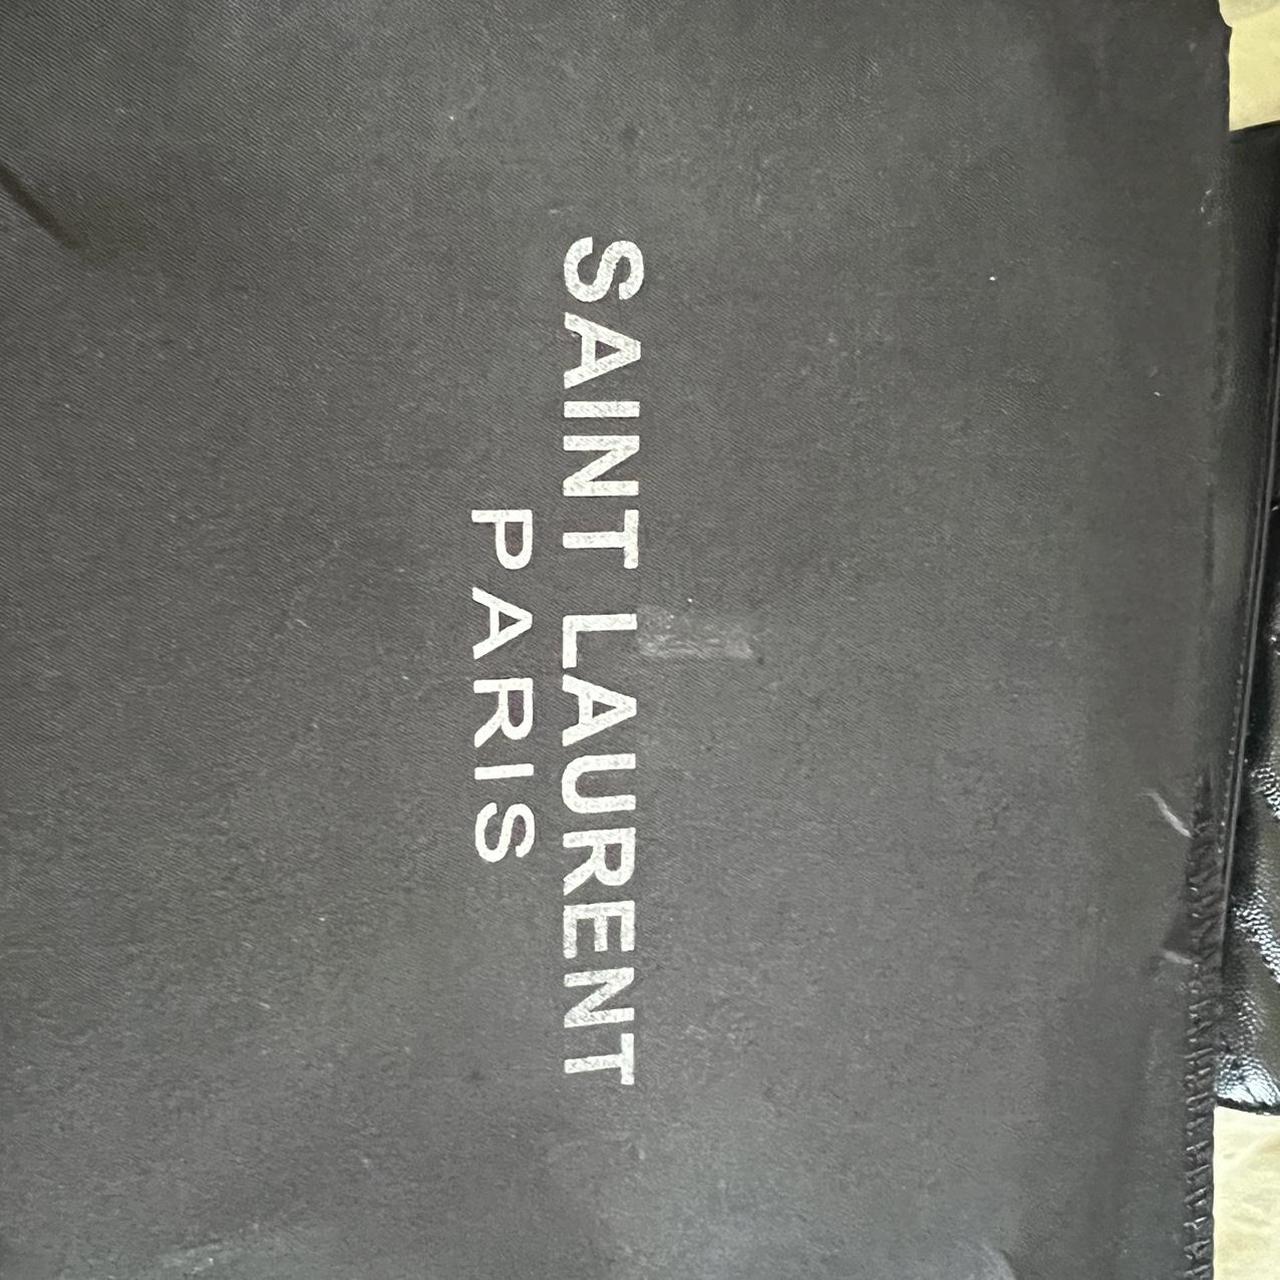 100% authentic Yves Saint Laurent Retails $2100 - Depop